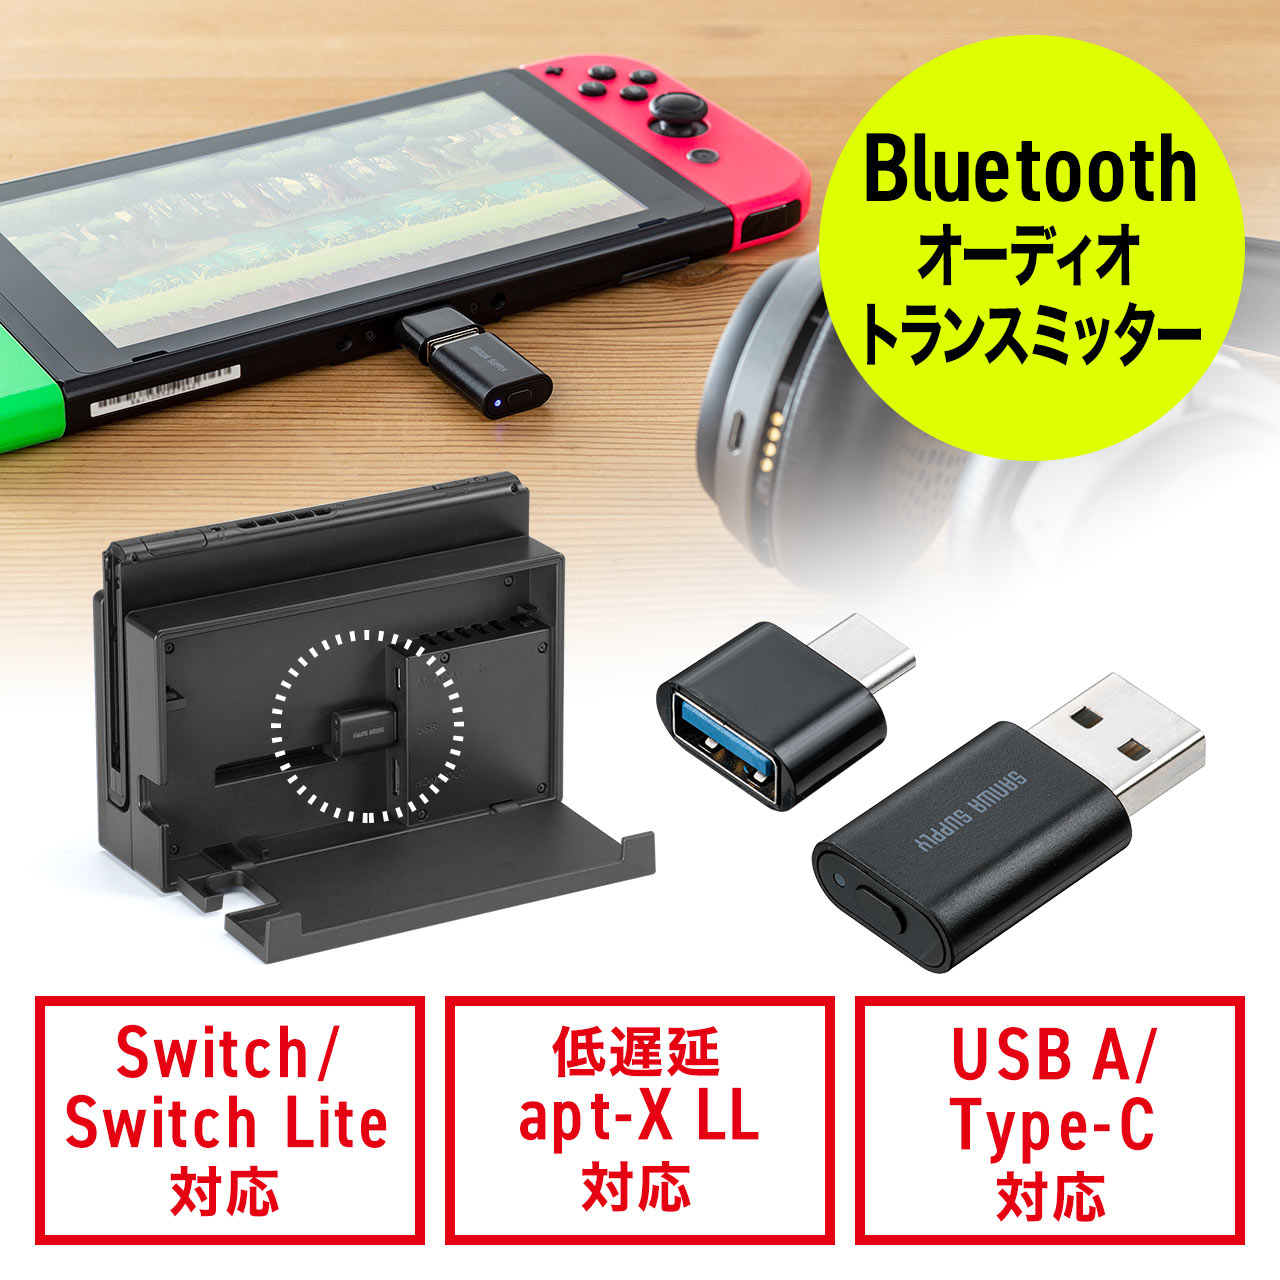 Bluetoothトランスミッター オーディオアダプタ Nintendo Switch Lite Ps4 Ps5 Ipad Pro Pc対応 Type C変換アダプタ 低遅延 Apt X Ll 400 Btad009の販売商品 通販ならサンワダイレクト